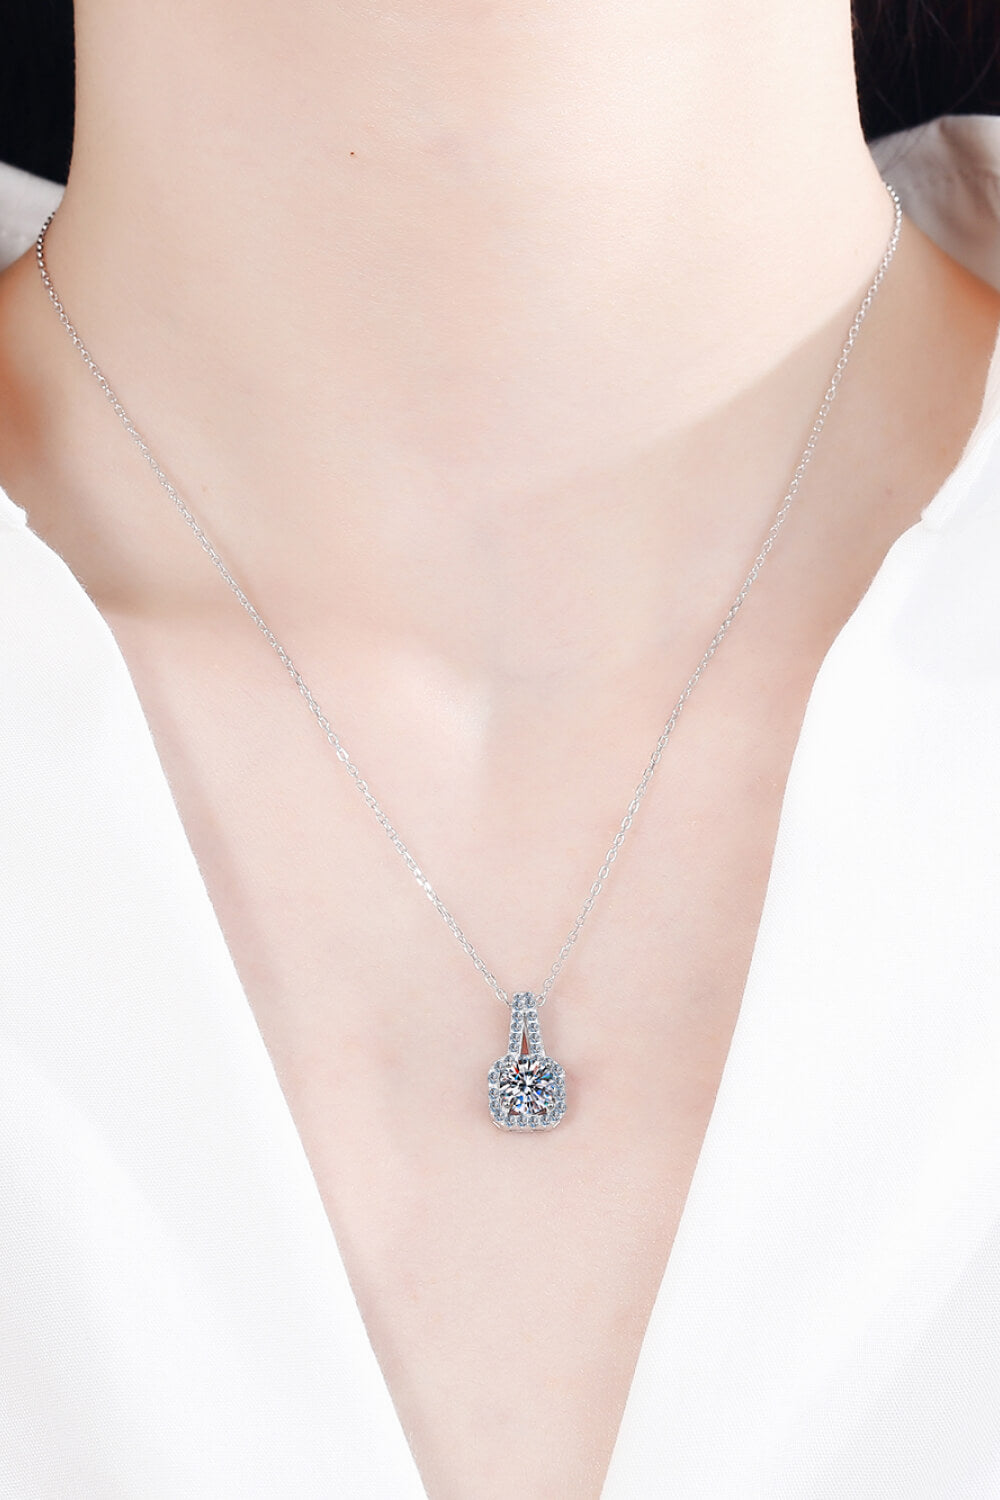 Look Amazing 2 Carat Moissanite Pendant Necklace - DromedarShop.com Online Boutique